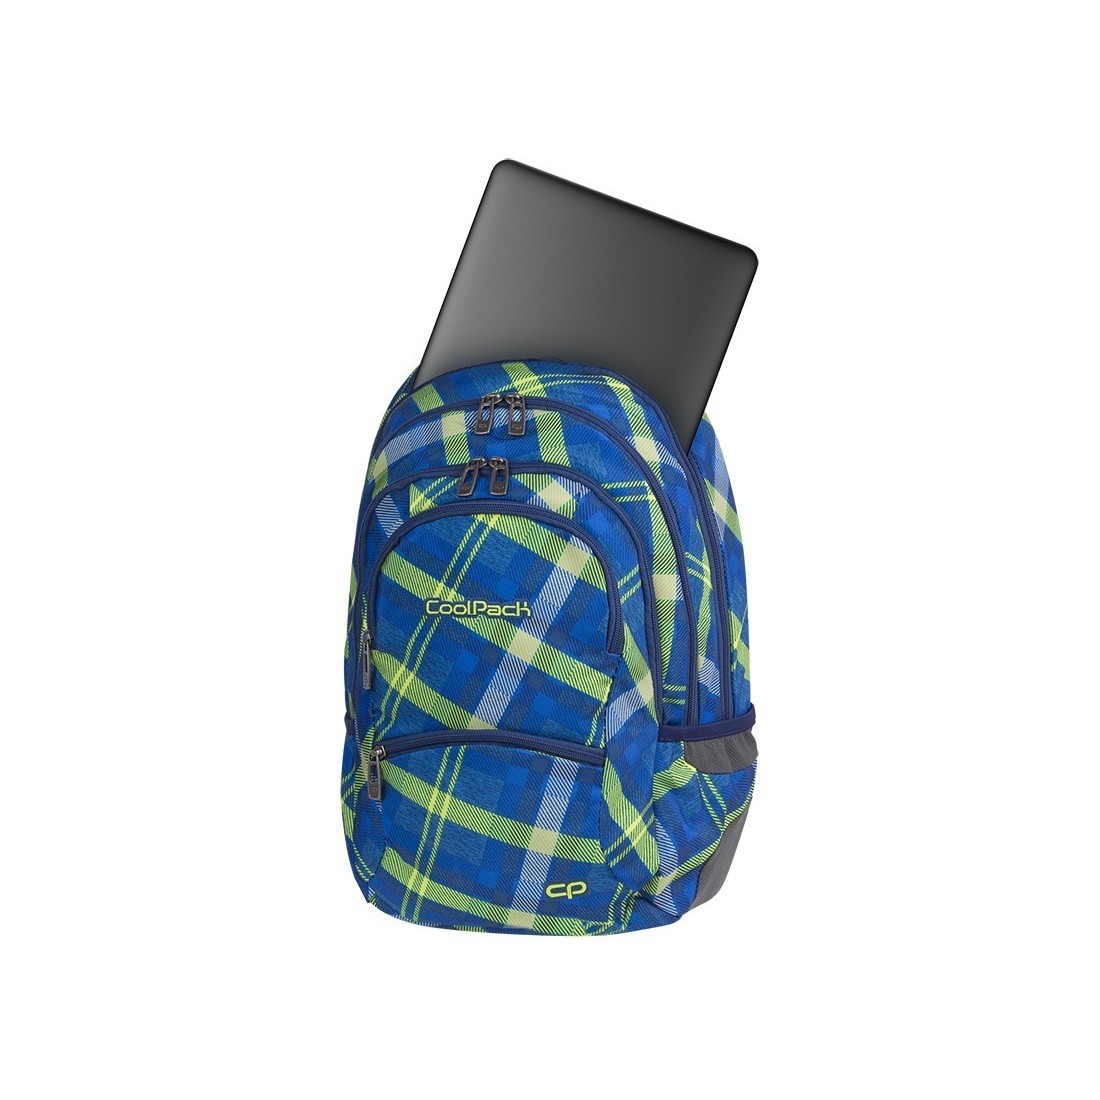 Plecak młodzieżowy CoolPack CP COLLEGE SPRINGFIELD zielono-niebieski w dużą kratę - 5 przegród - A534 - plecak-tornister.pl